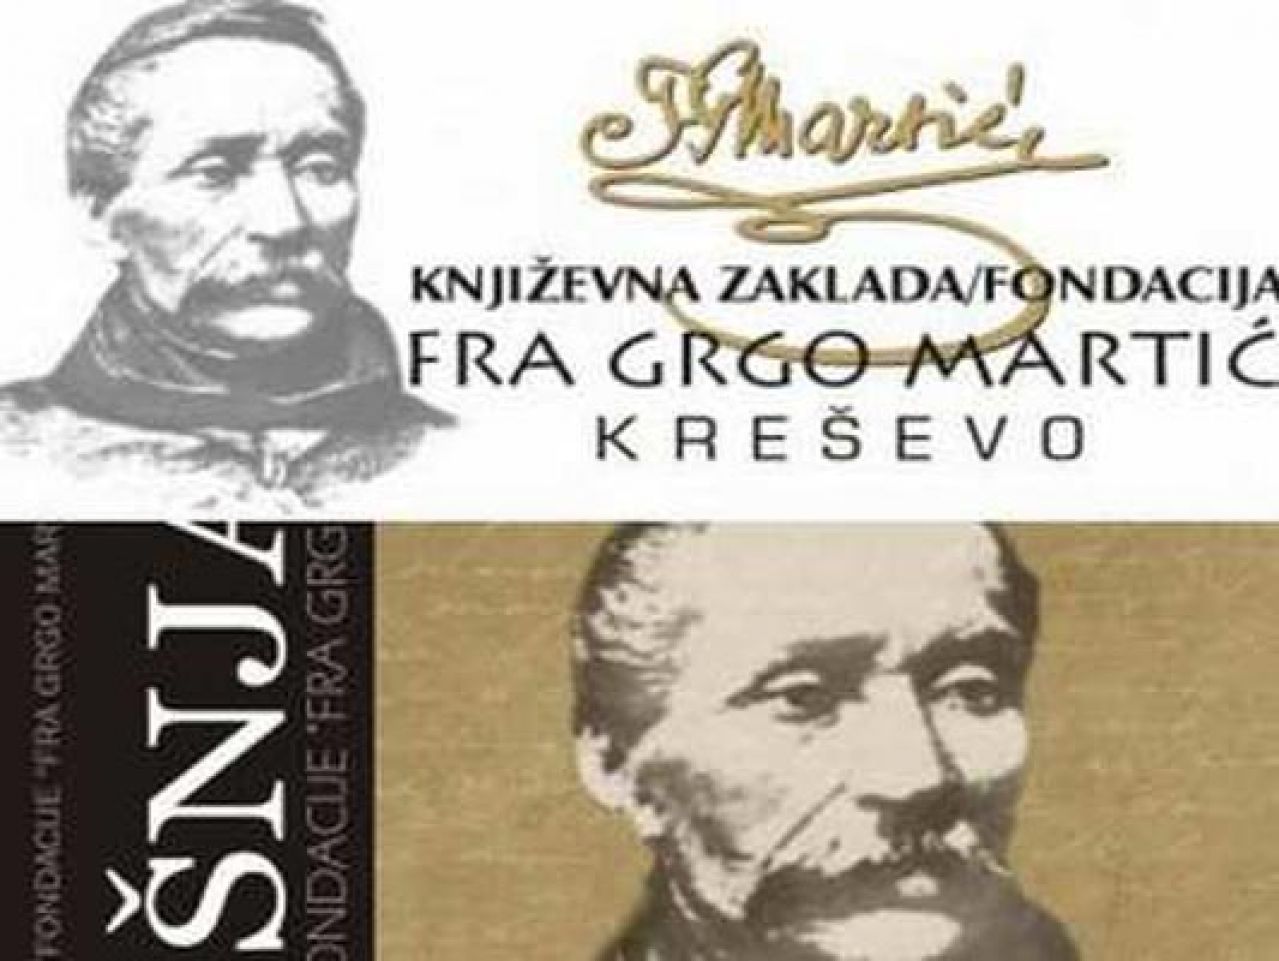 Raspisan natječaj Fondacije 'Fra Grgo Martić'